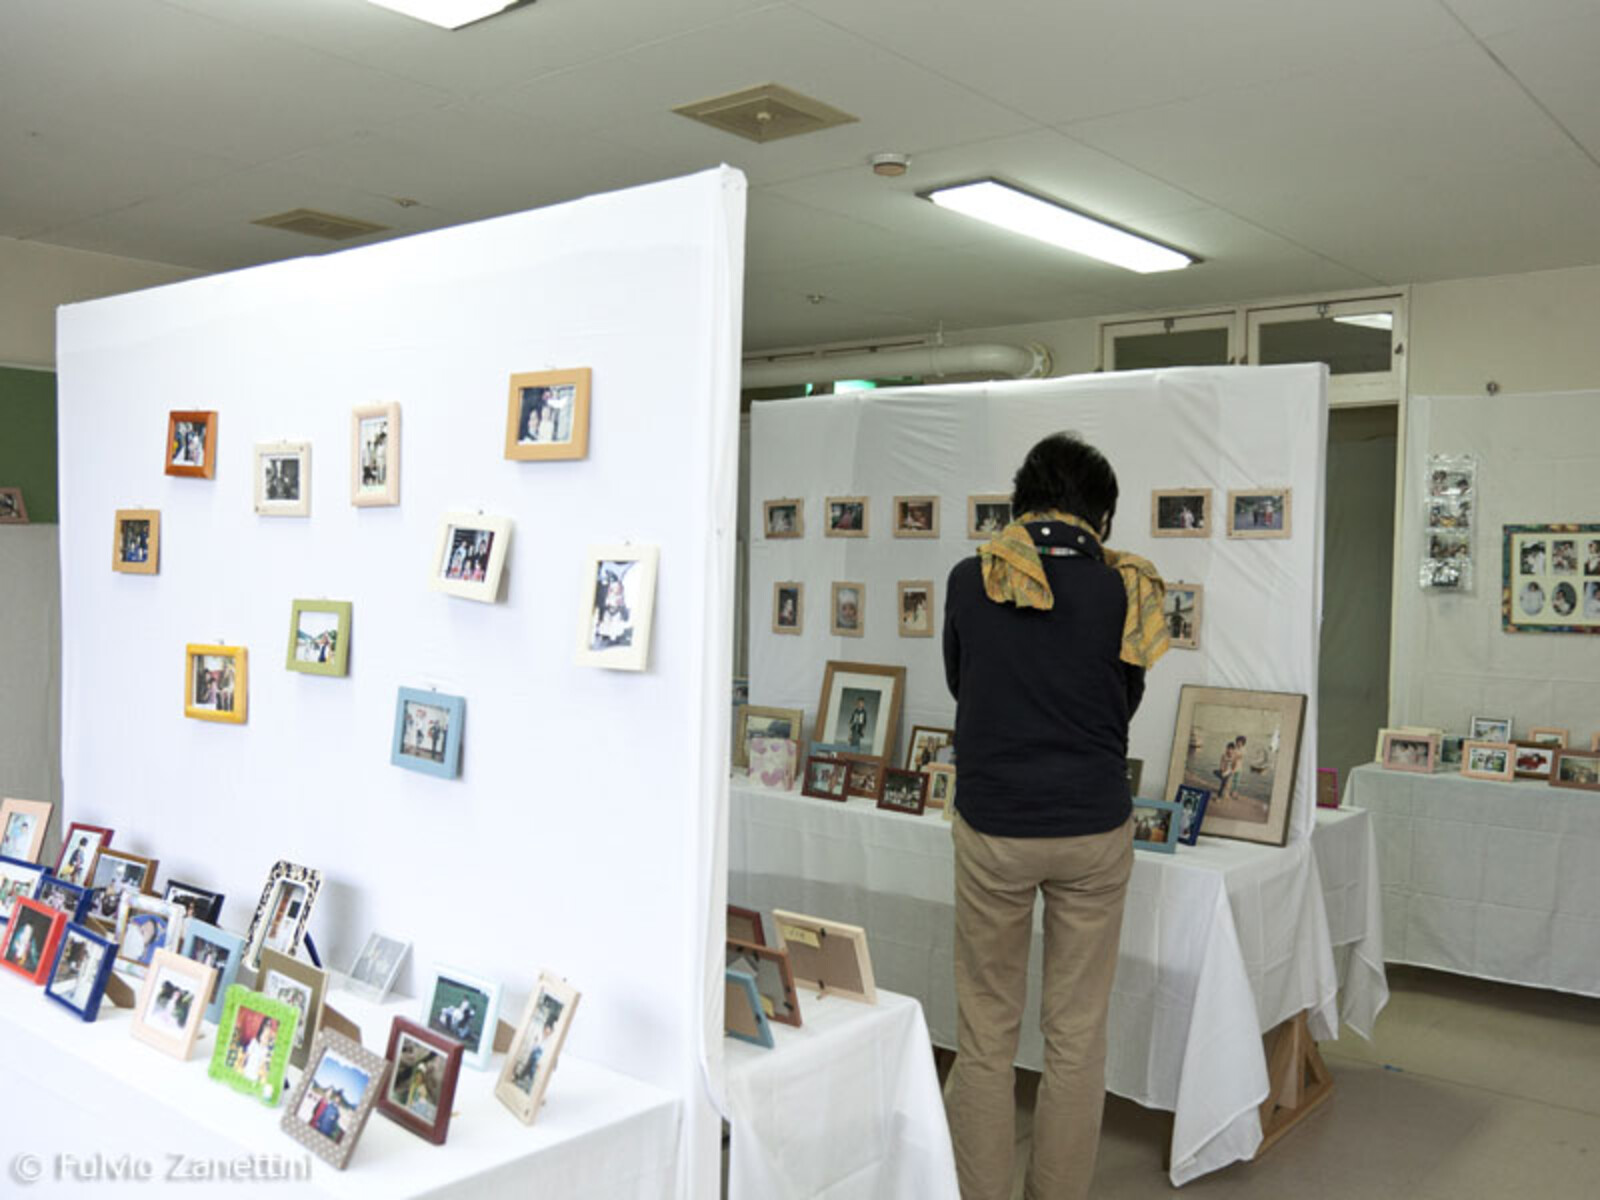 Bald darauf wurde eine Ausstellung eröffnet, bei der betroffene Bürger von Yamada nach ihren privaten Fotografien suchen konnten